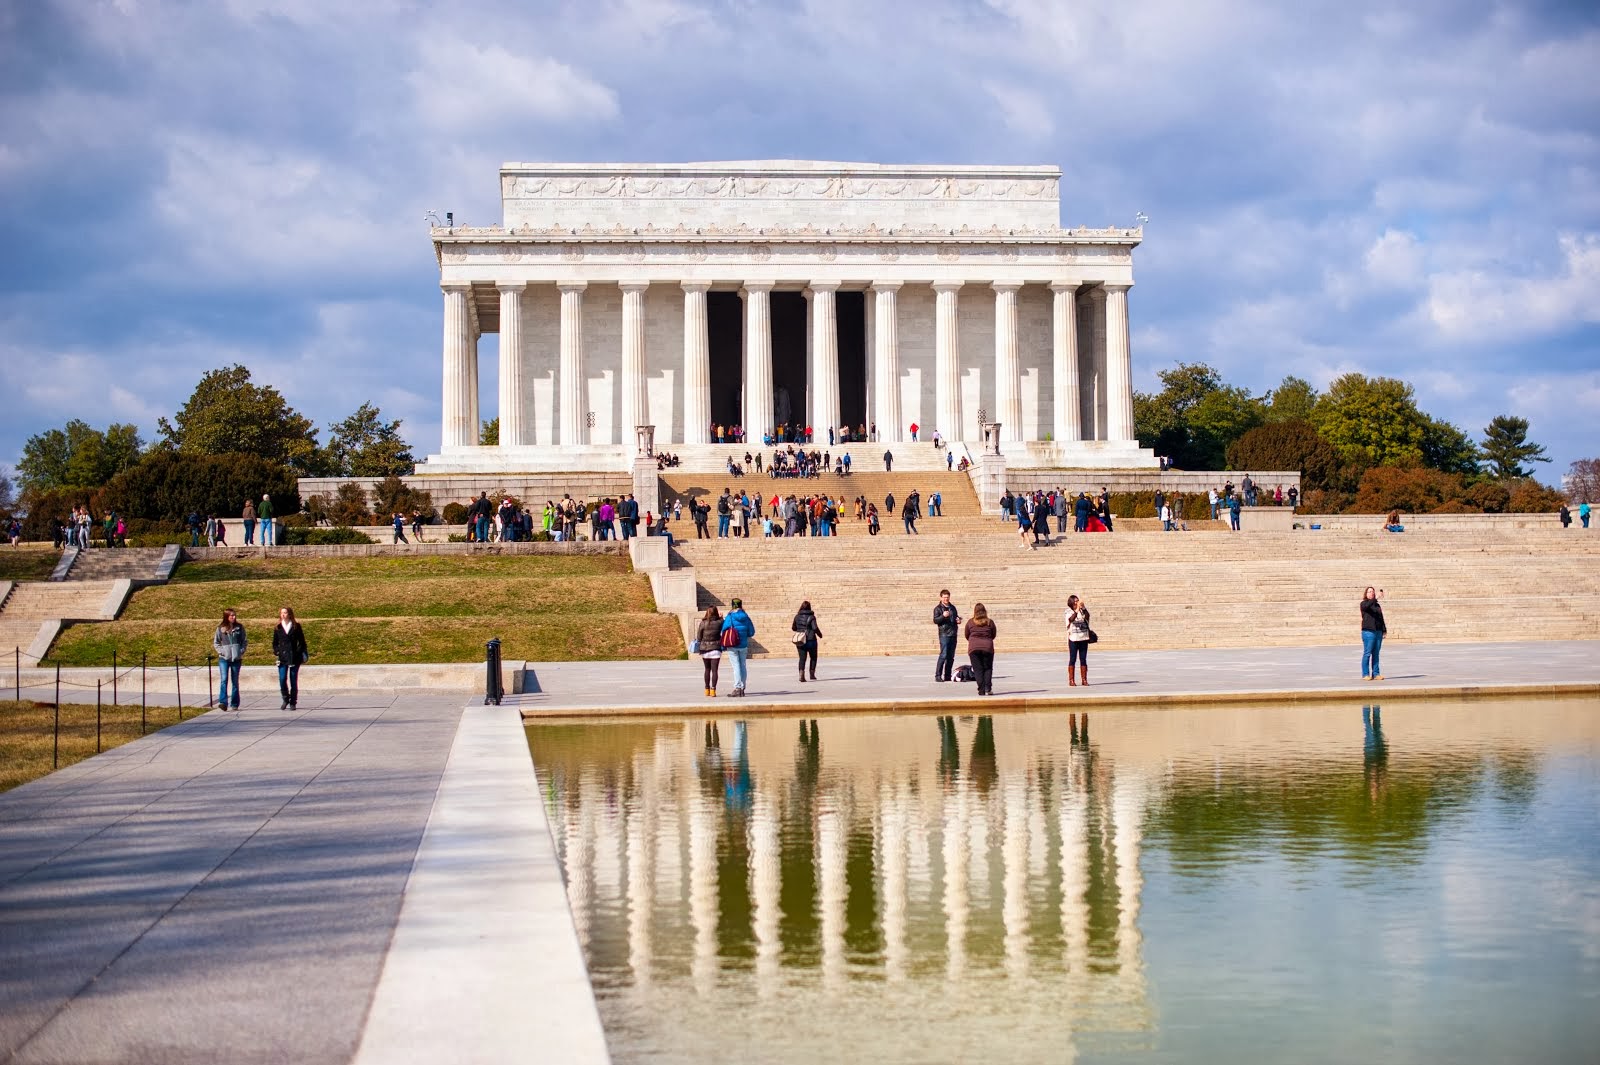 Washington Memorials